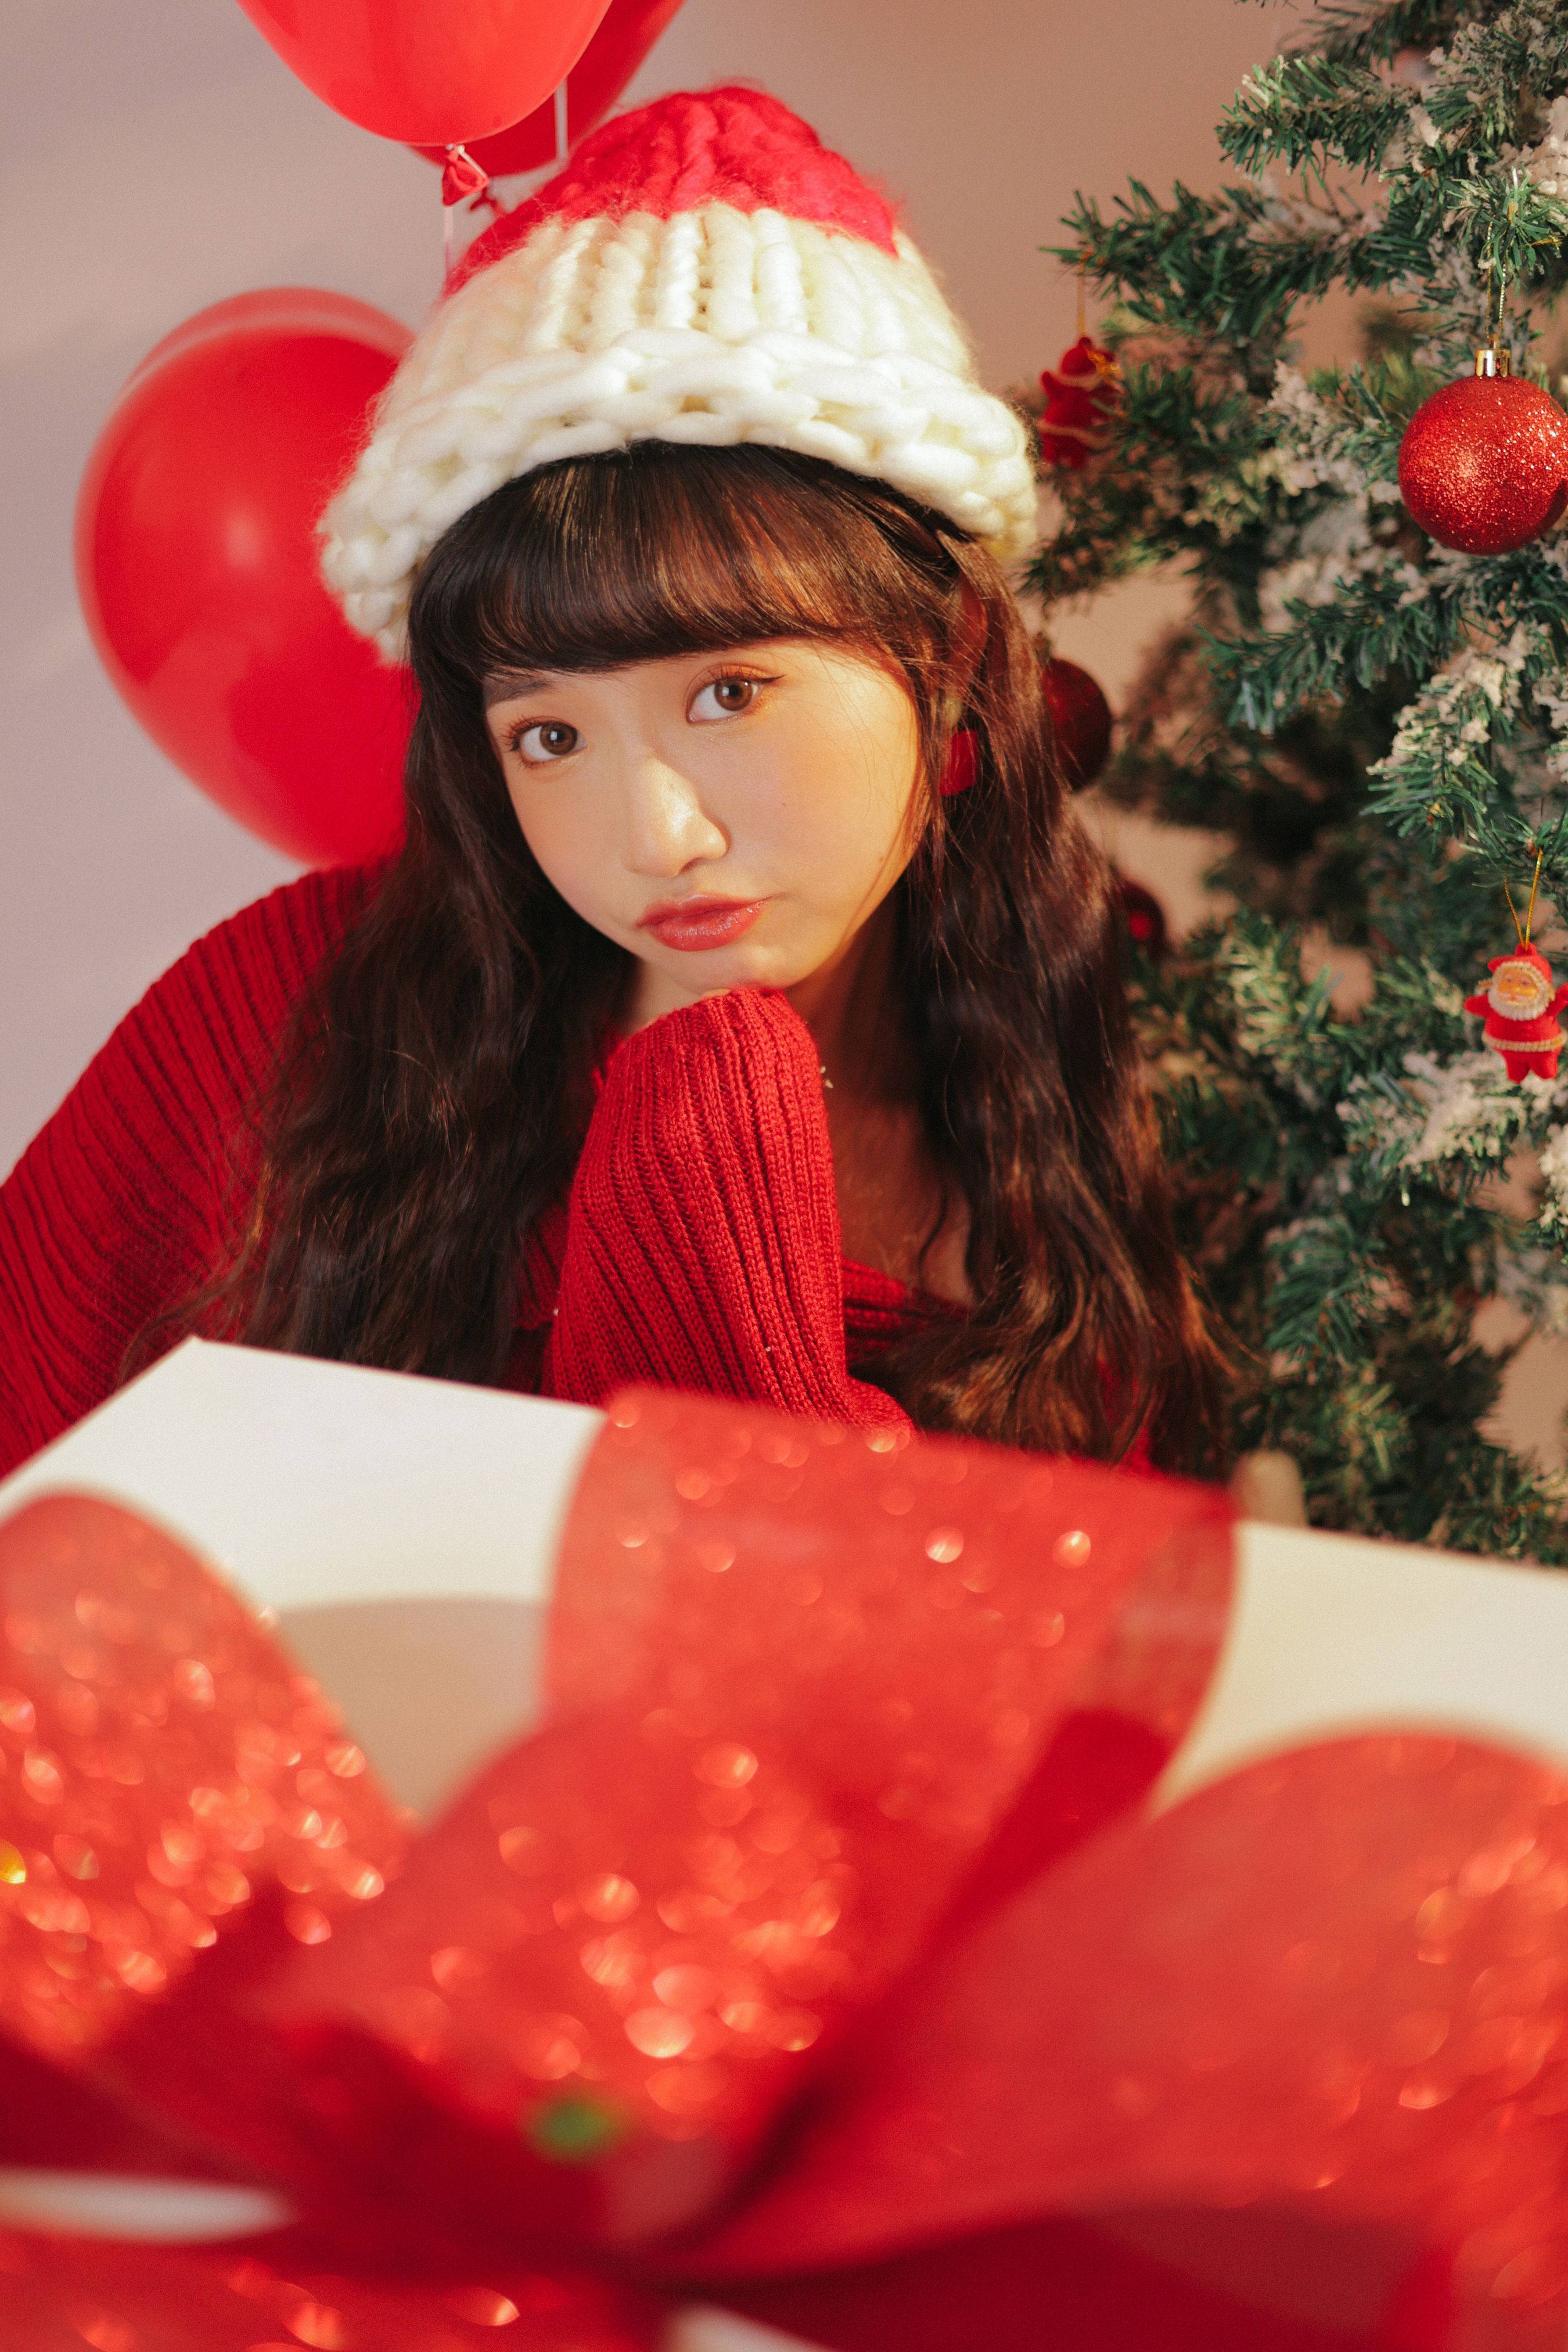 爱心红色圣诞 写真模特 个人写真 圣诞美女&YiTuYu艺图语-3